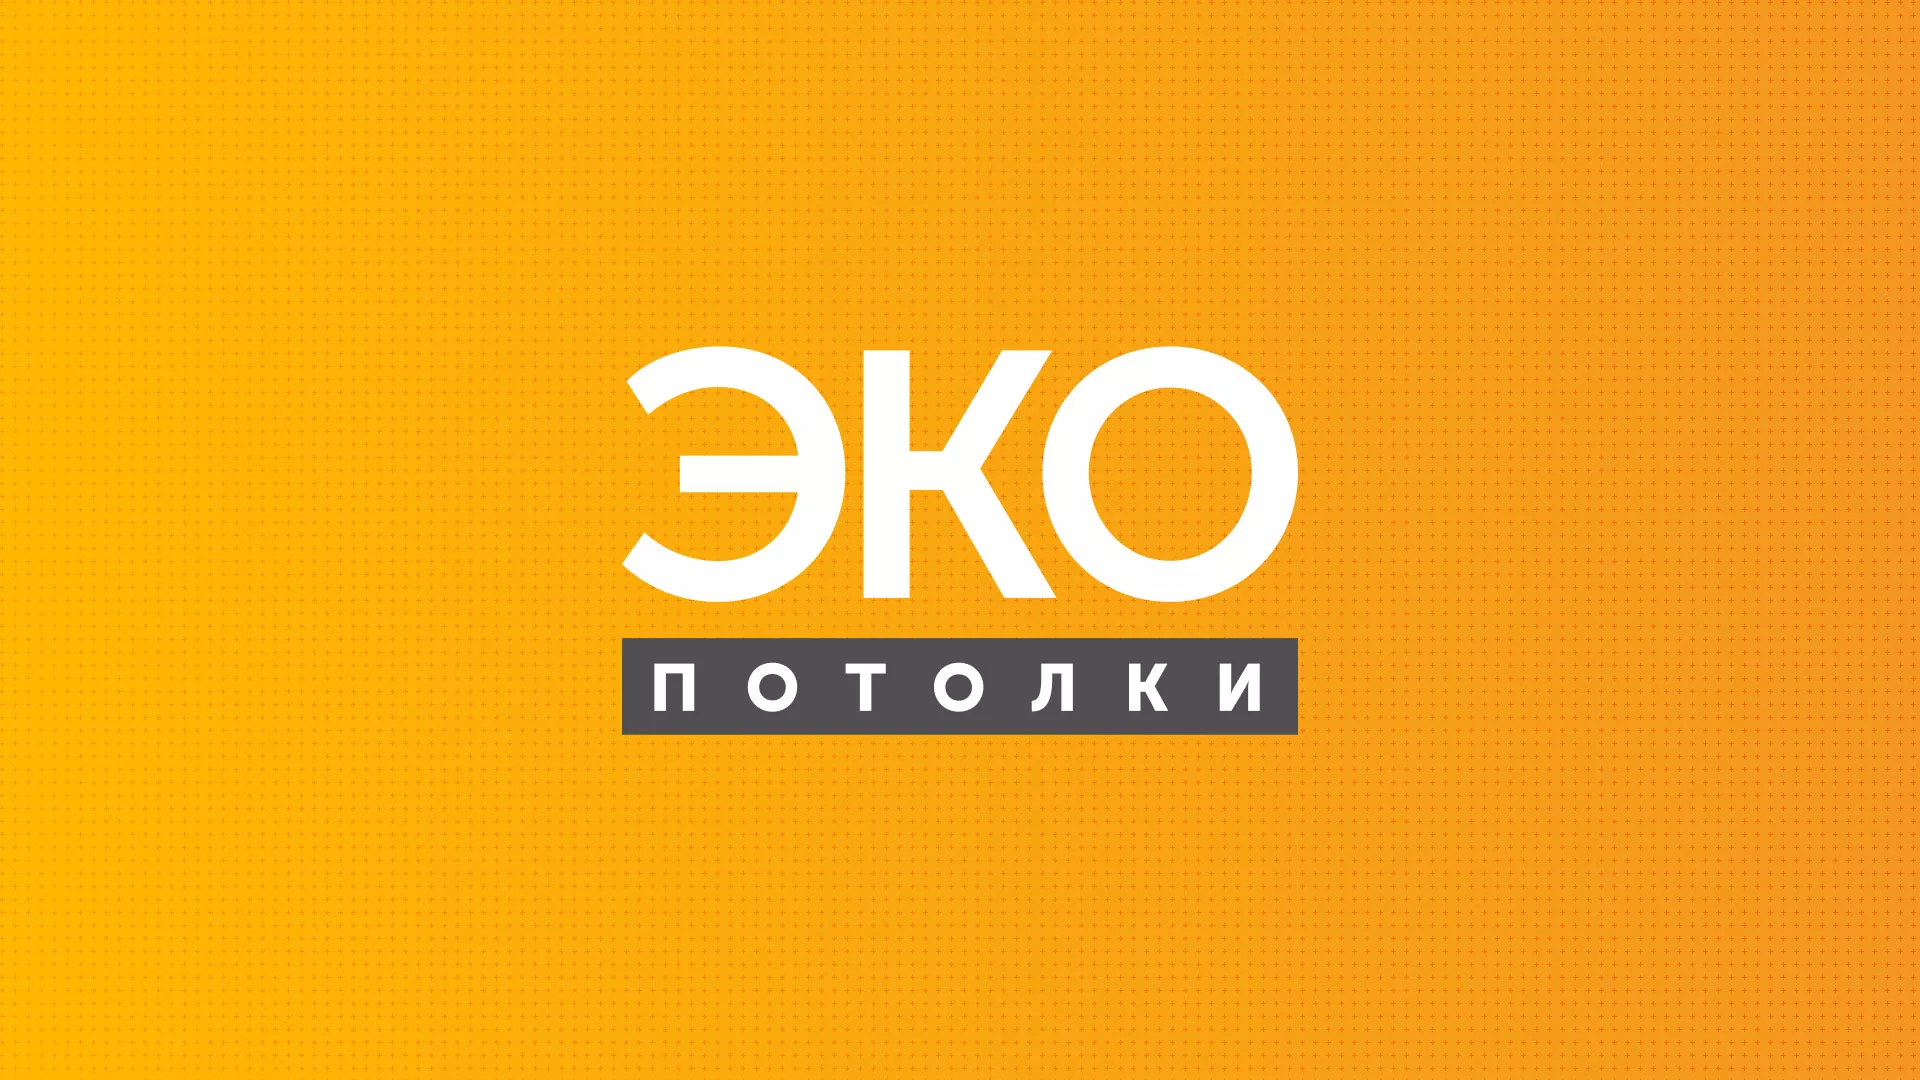 Разработка сайта по натяжным потолкам «Эко Потолки» в Петровске